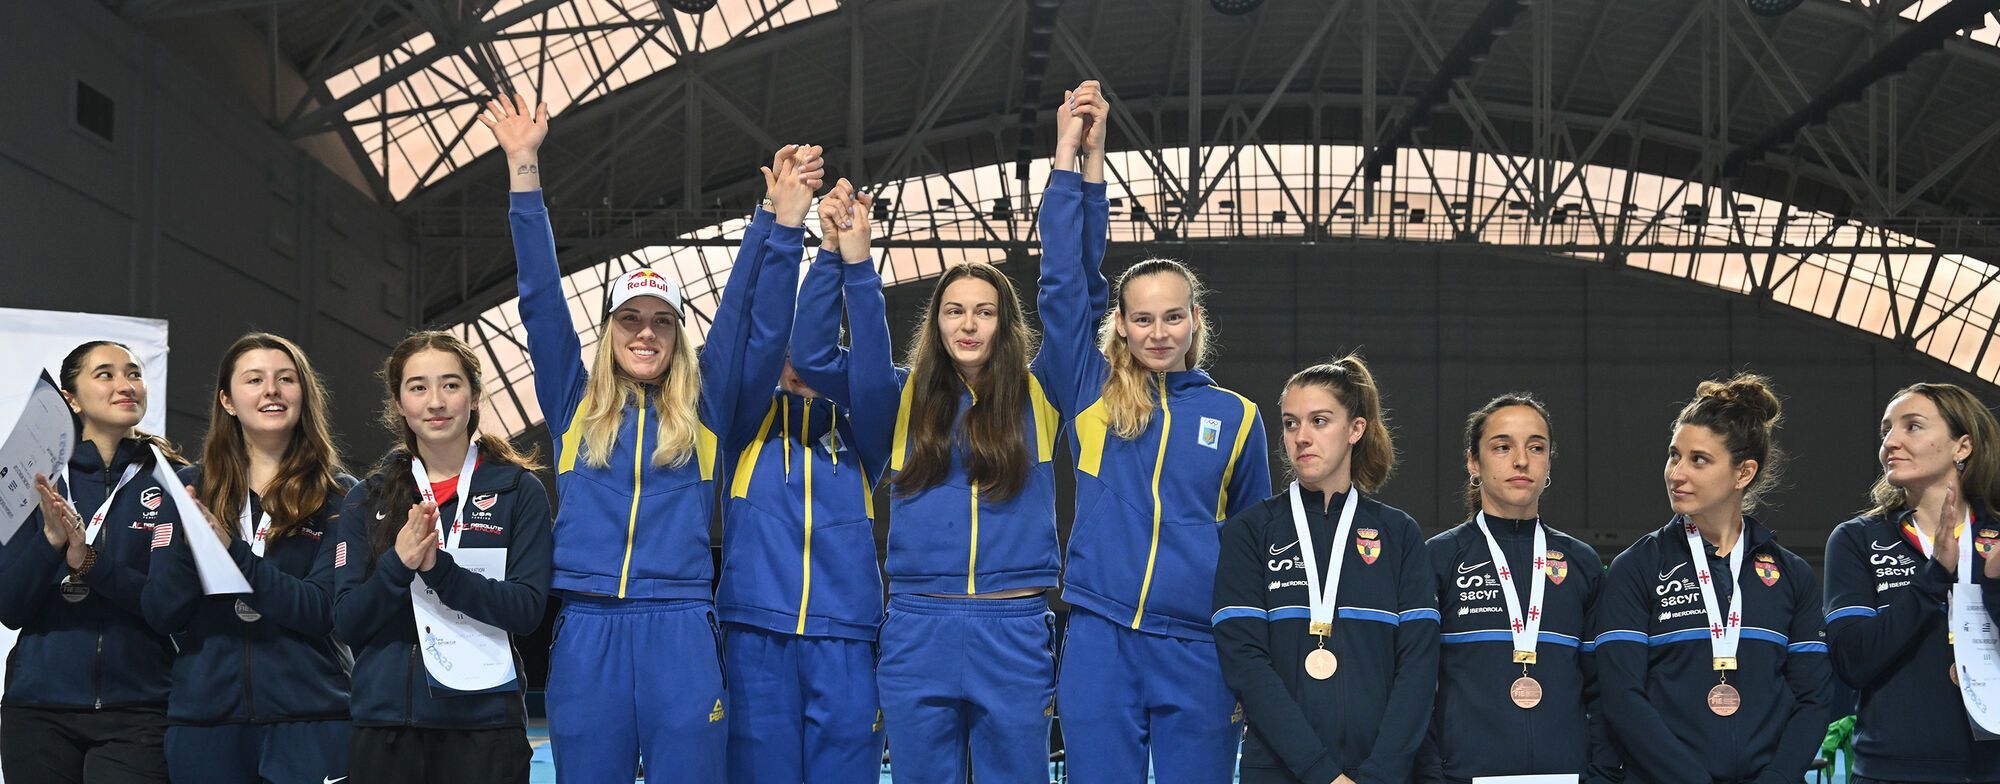 Україна перемогла на Кубку світу з фехтування, обігравши у золотому фіналі США